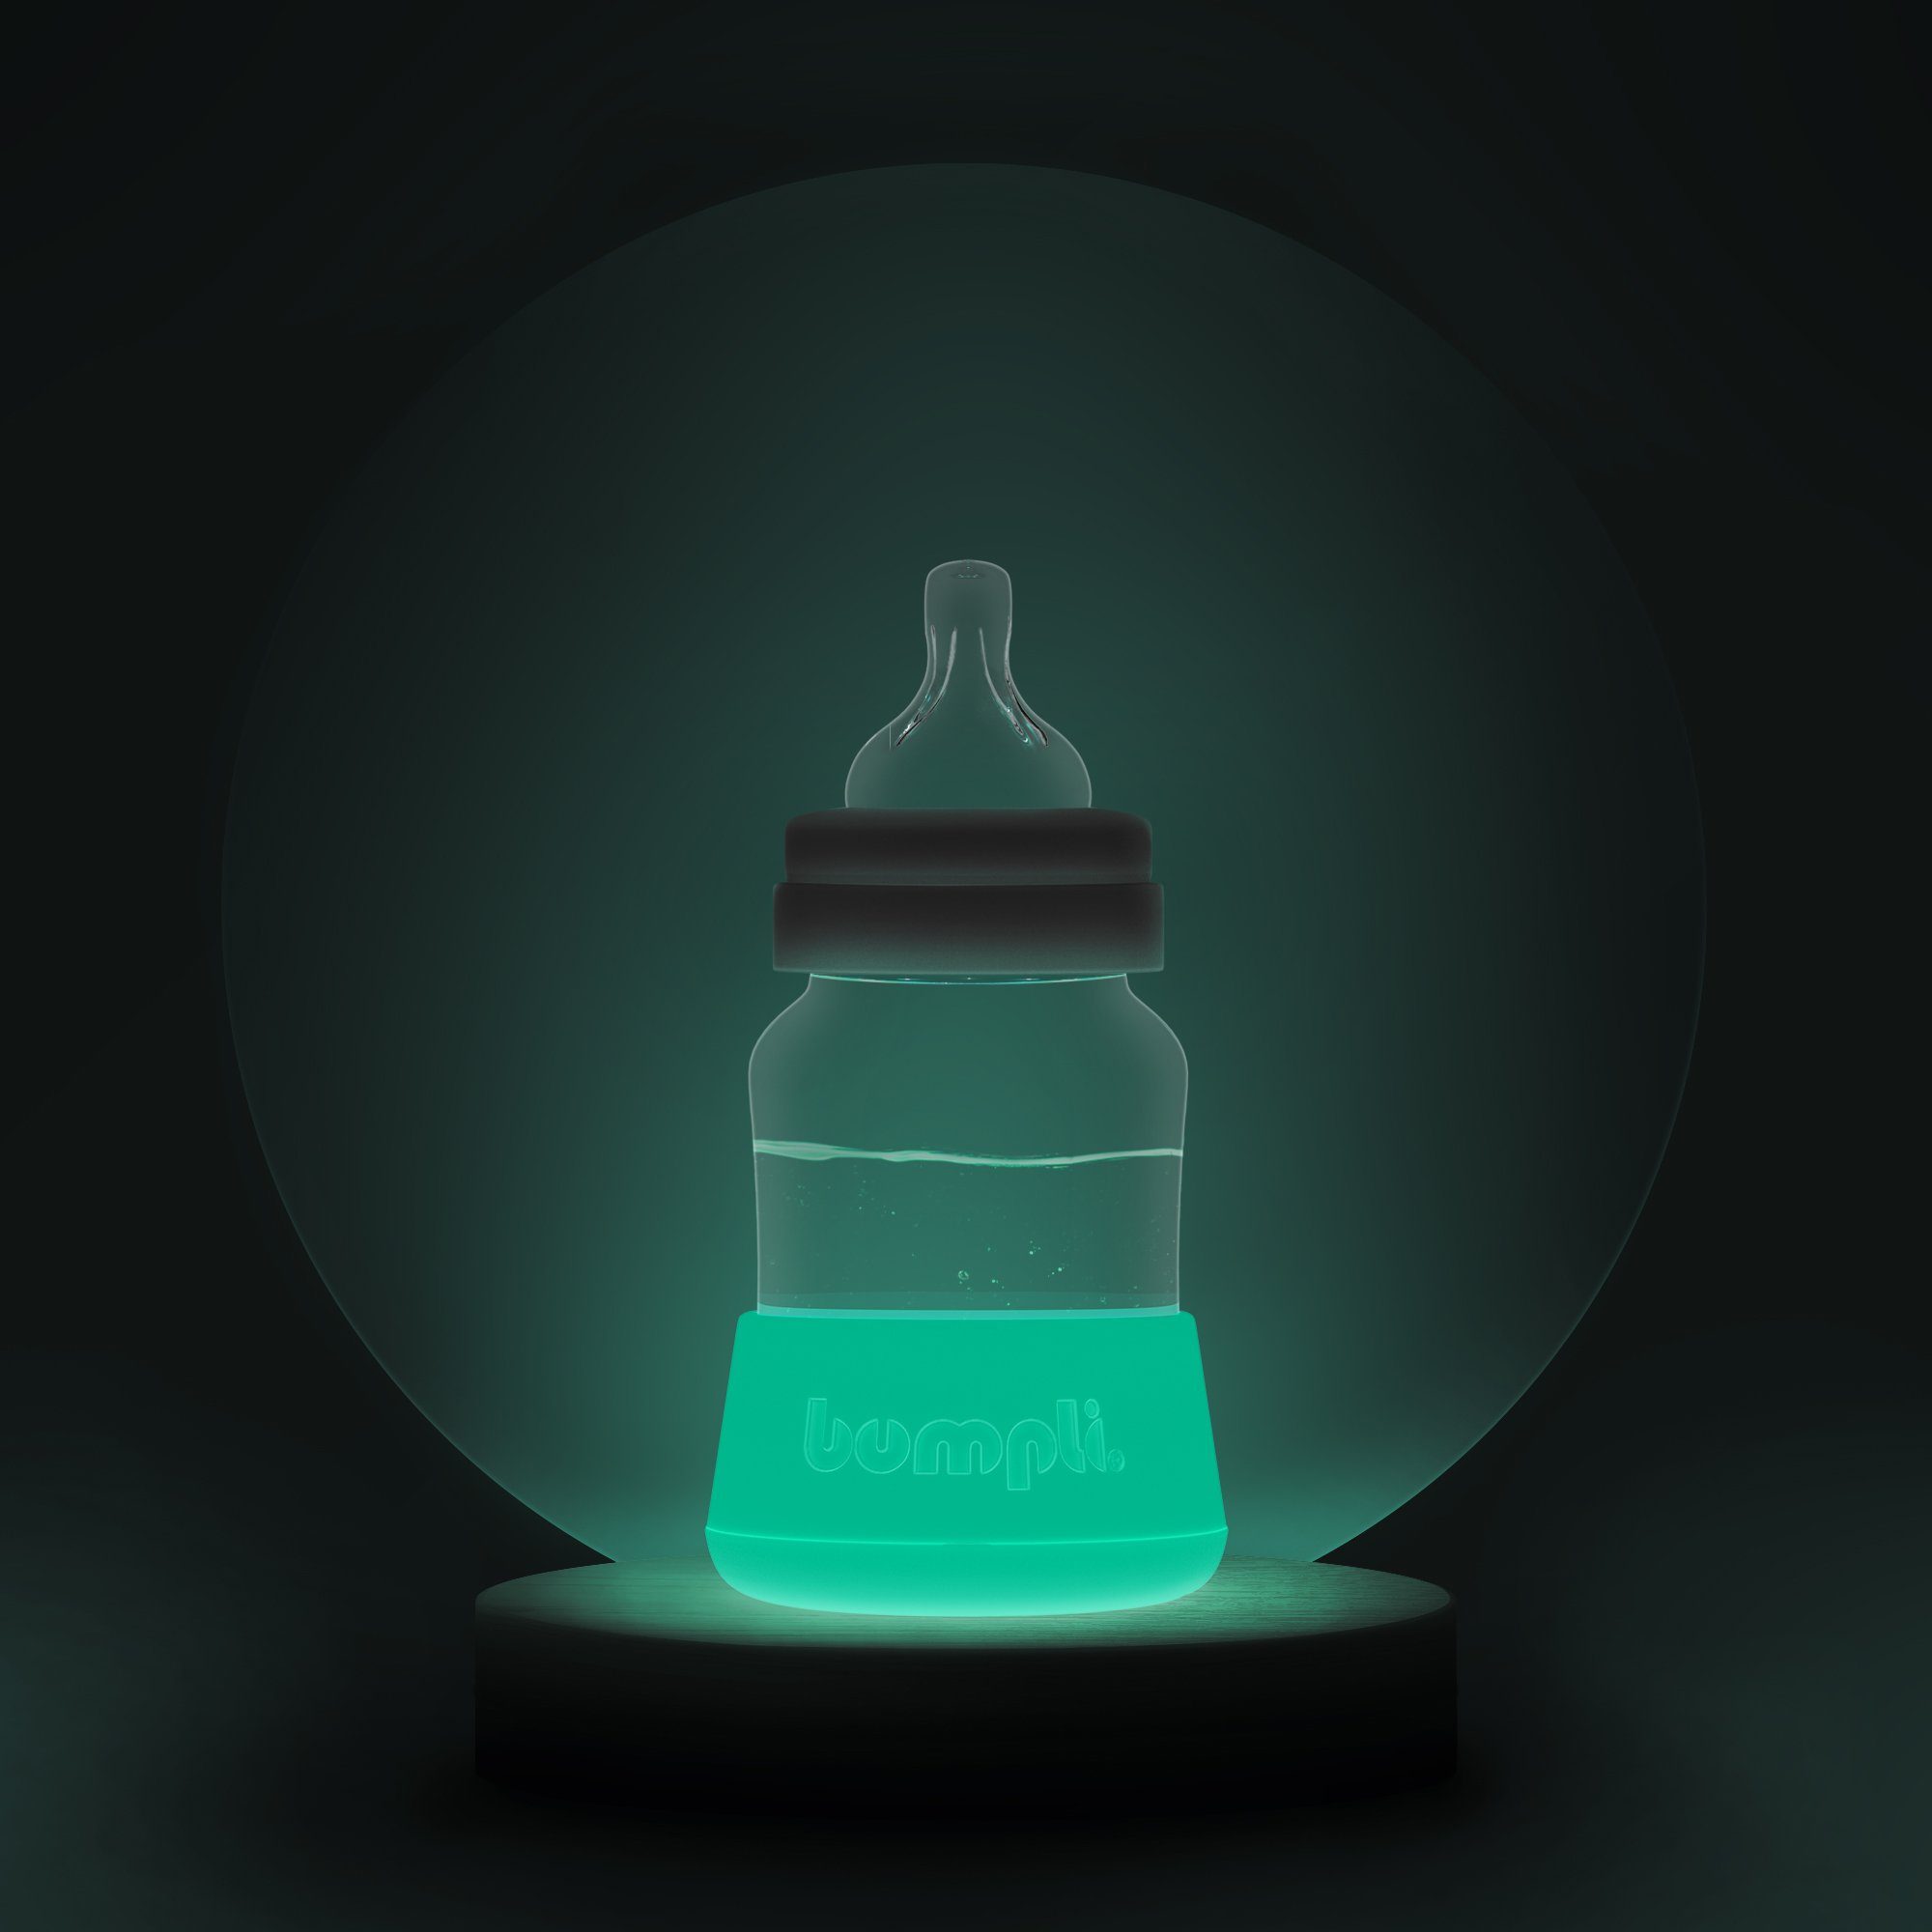 bumpli® Babyflasche Selbstleuchtendes Nachtlicht für Milchflaschen, lädt sich tagsüber automatisch auf, stoßfest